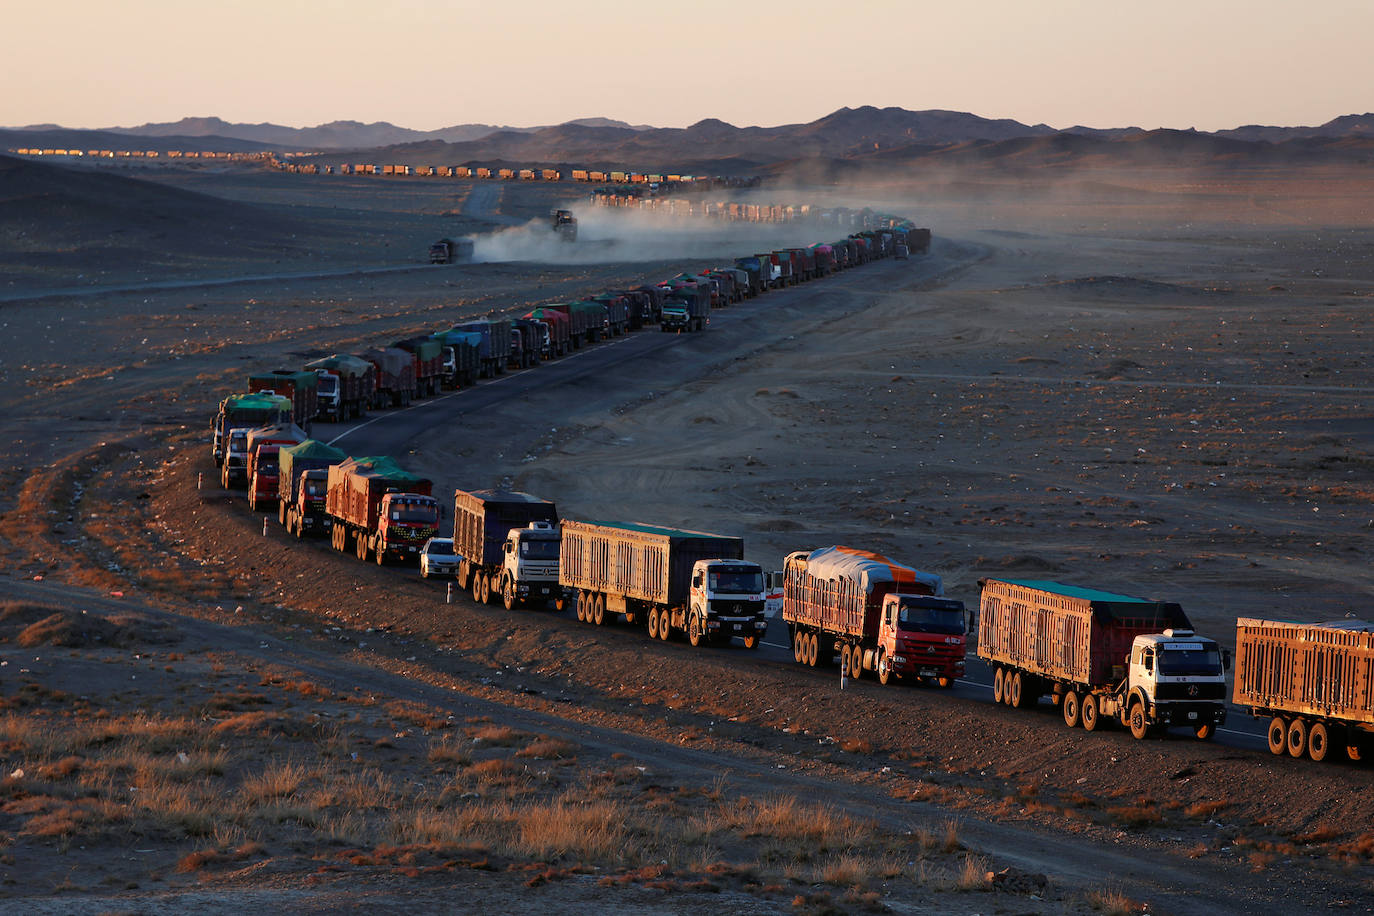 Miles de camiones pesados cargados con carbón están alineados hasta 130 kilómetros desde la frontera entre Mongolia y China en una única carretera en el desierto de Gobi, Mongolia, el 29 de octubre de 2017. El viaje puede durar más de una semana.